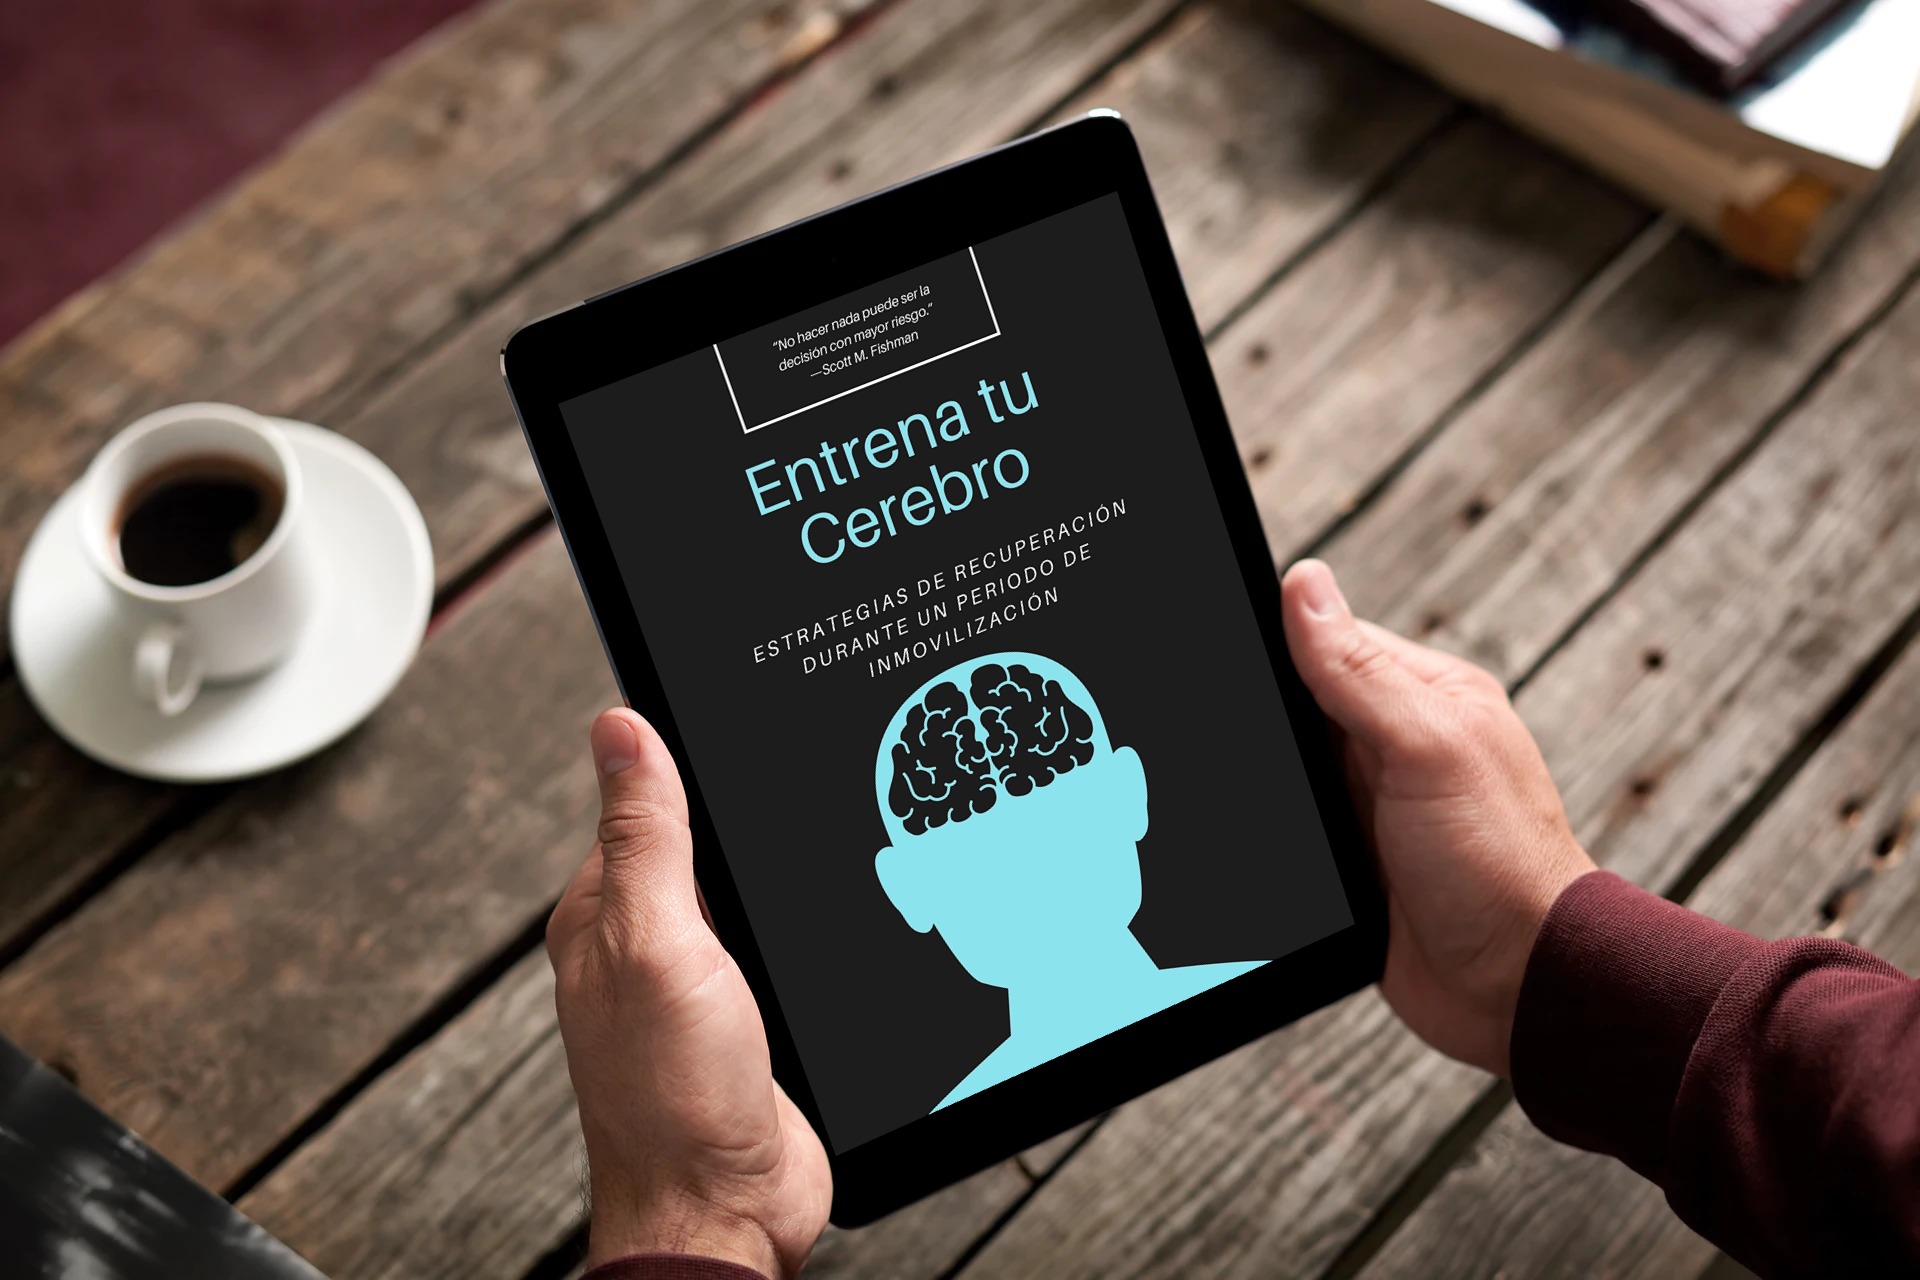 Entrena tu Cerebro es el único libro en español sobre los efectos de la inmovilización en el paciente y las estrategias de recuperación durante le mismo.